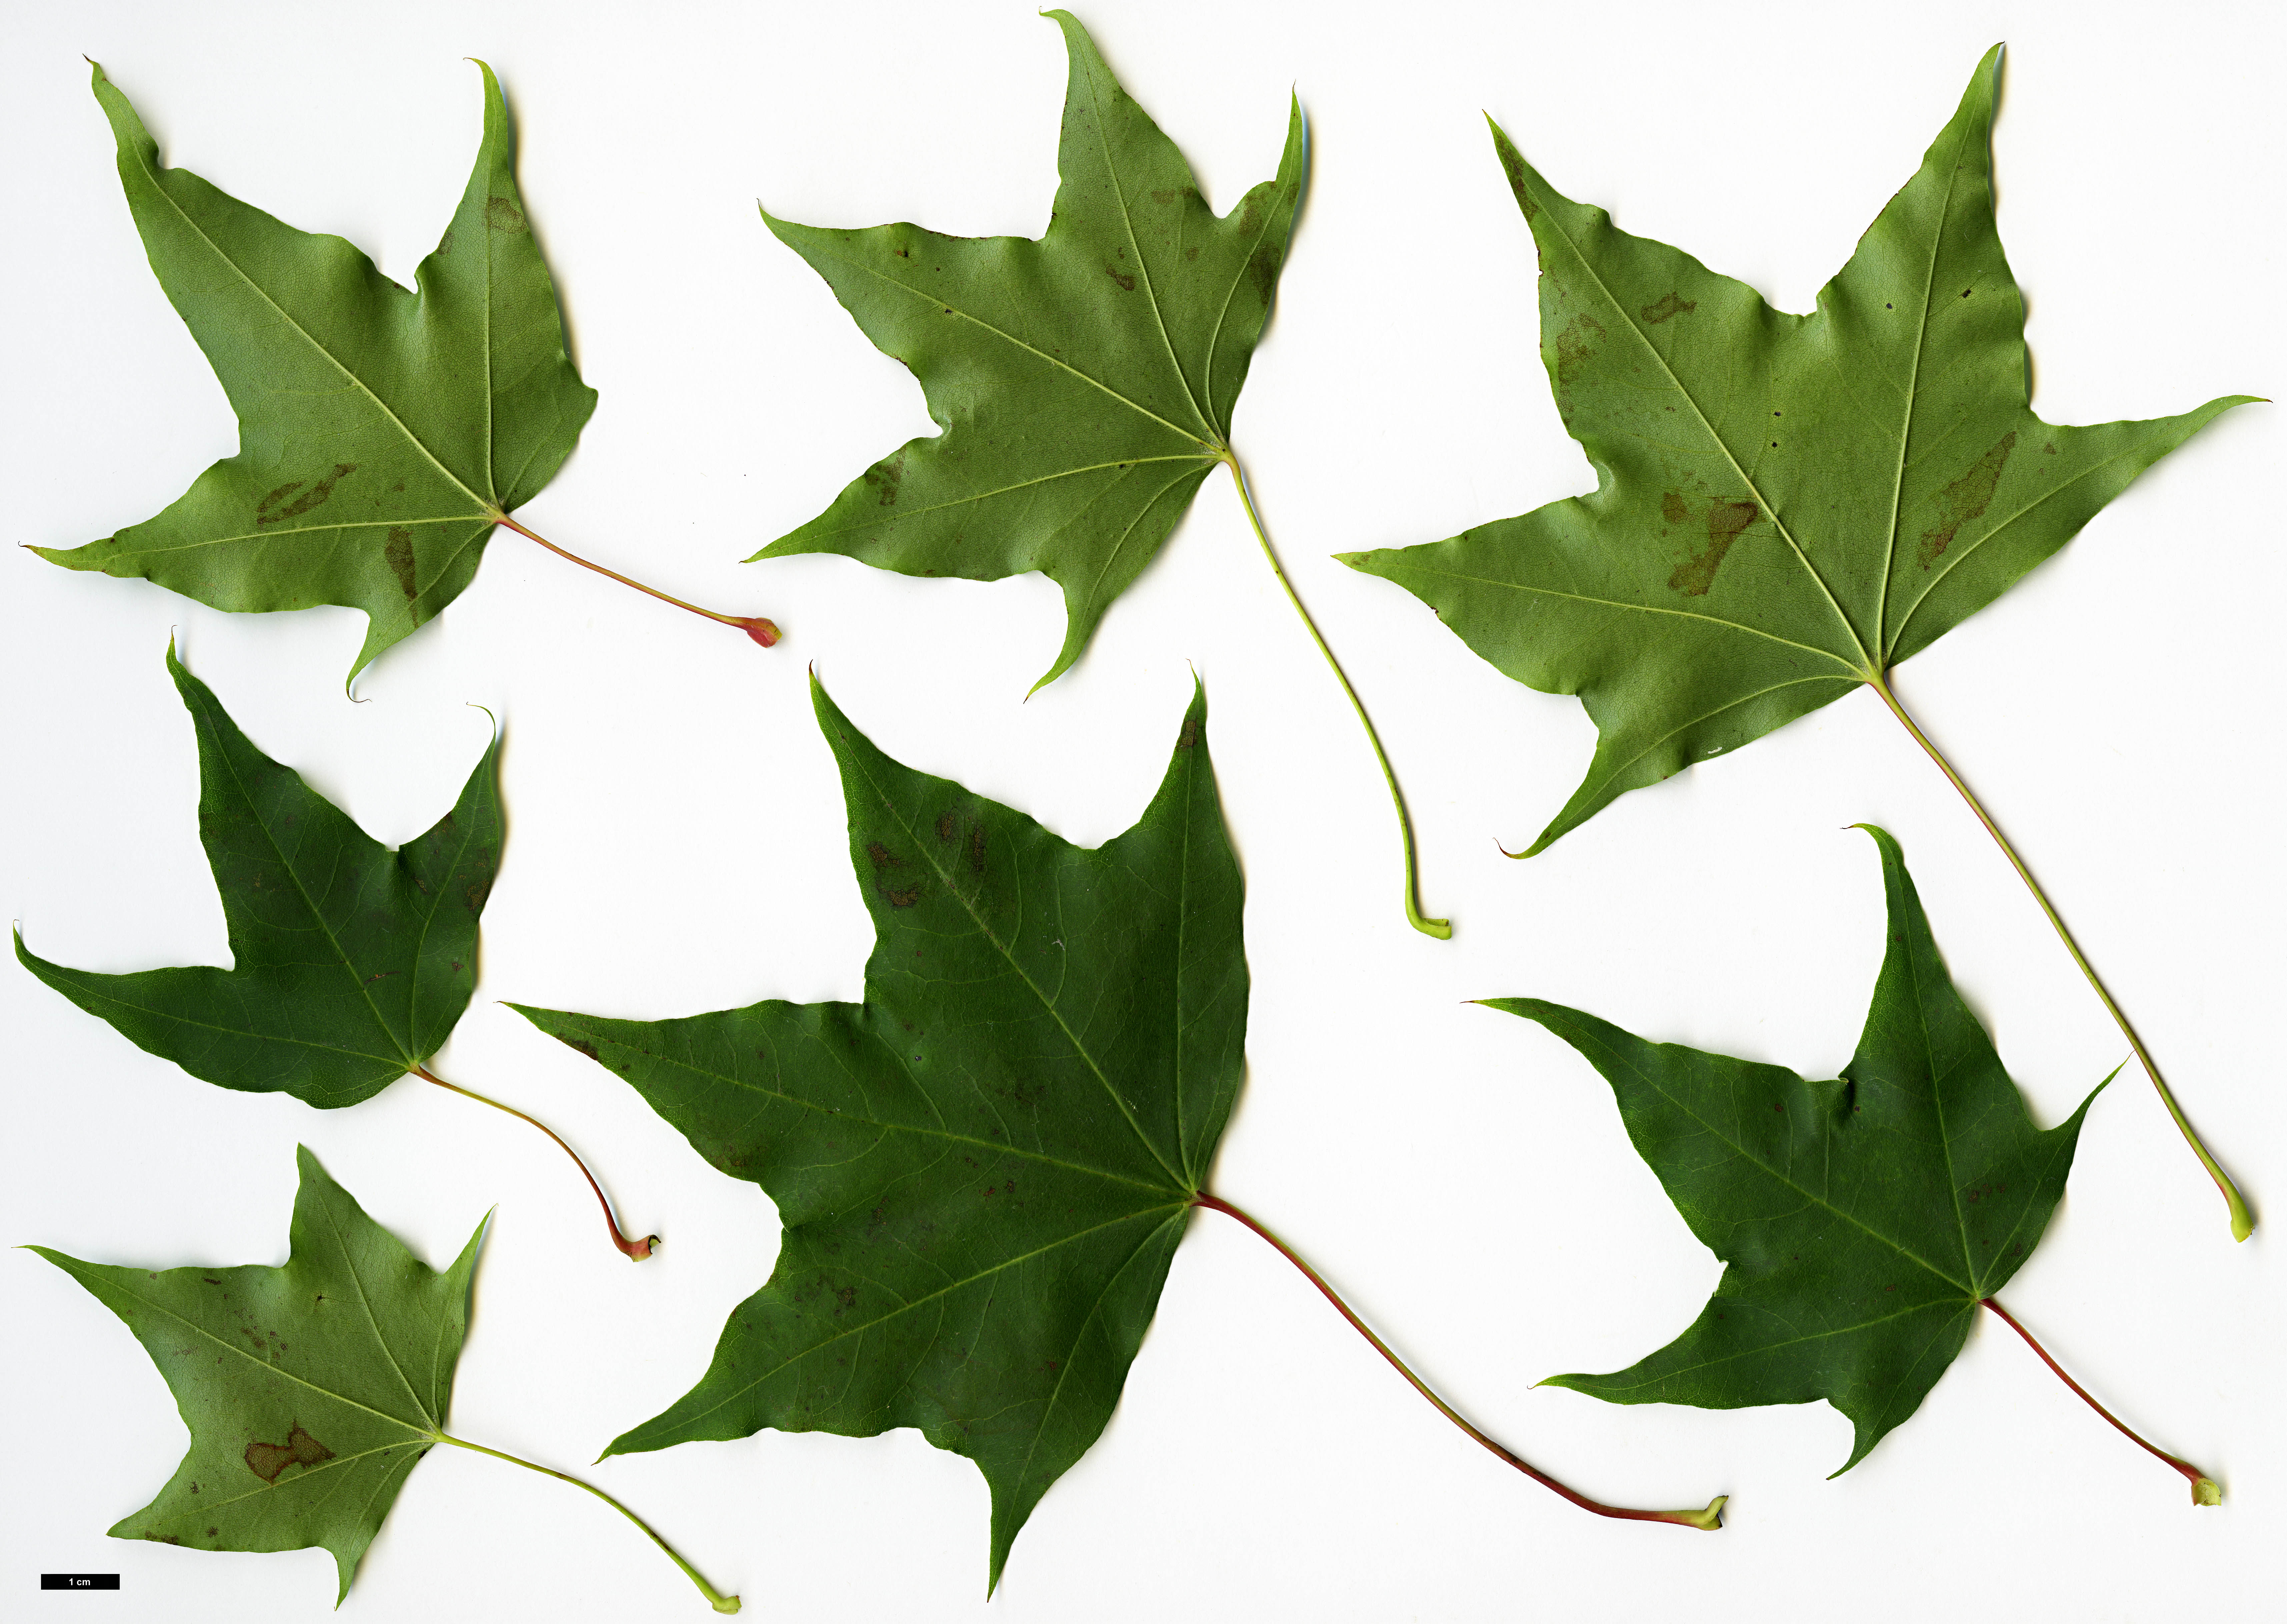 High resolution image: Family: Sapindaceae - Genus: Acer - Taxon: pictum - SpeciesSub: subsp. macropterum